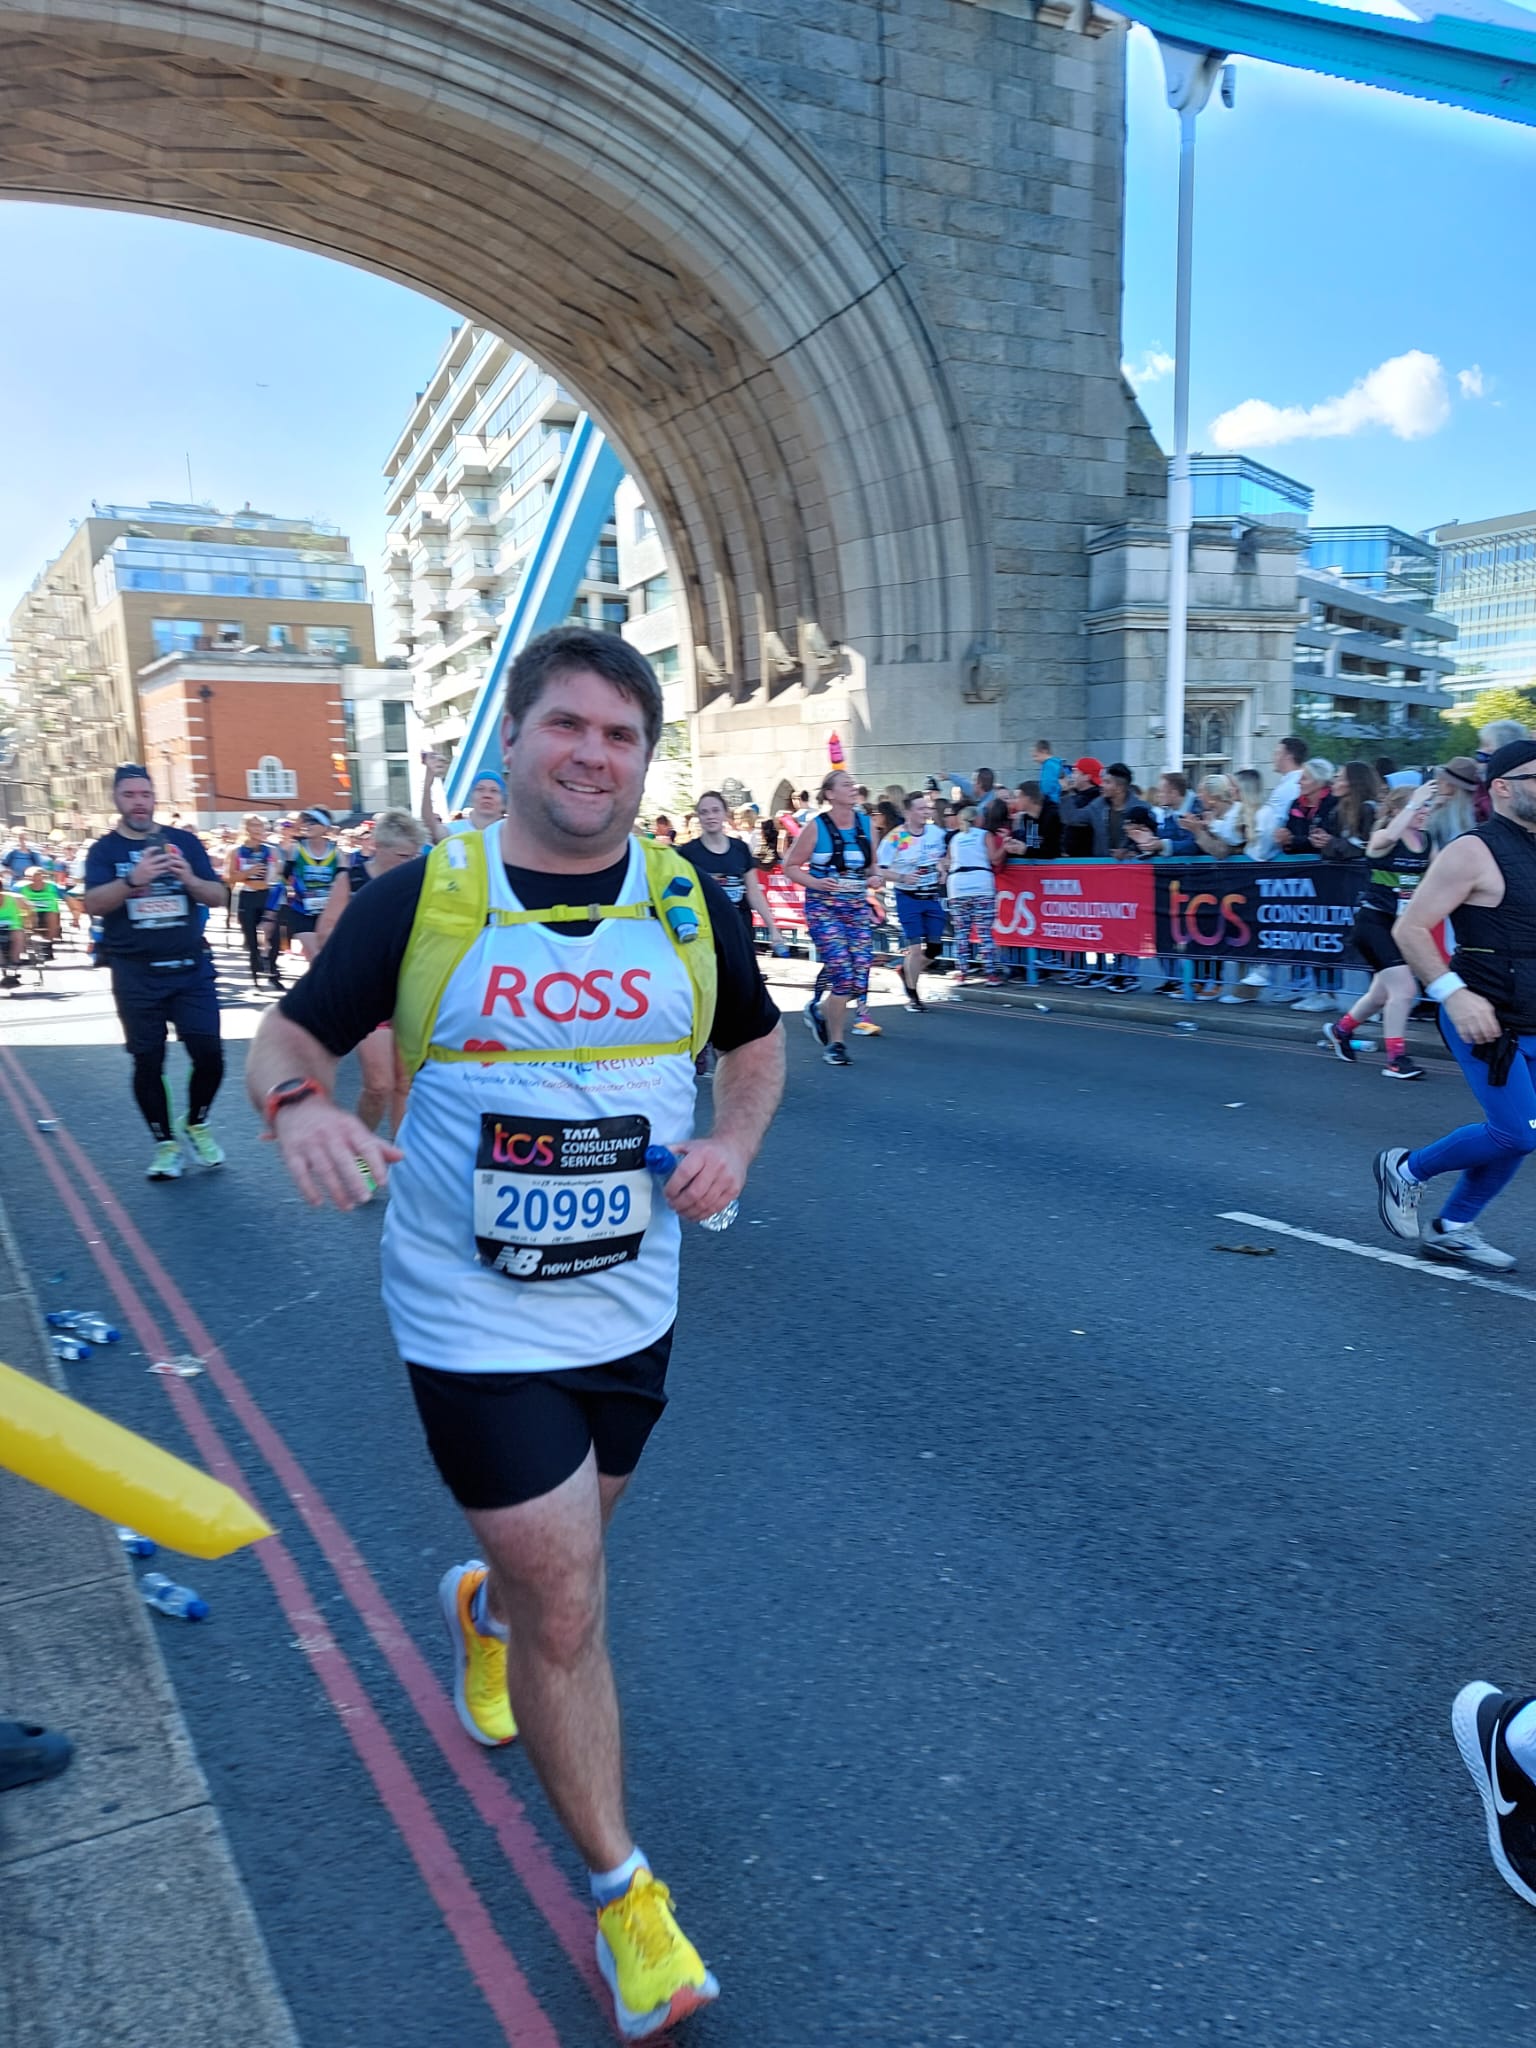 An image of Super runner Ross raises money for Rehab